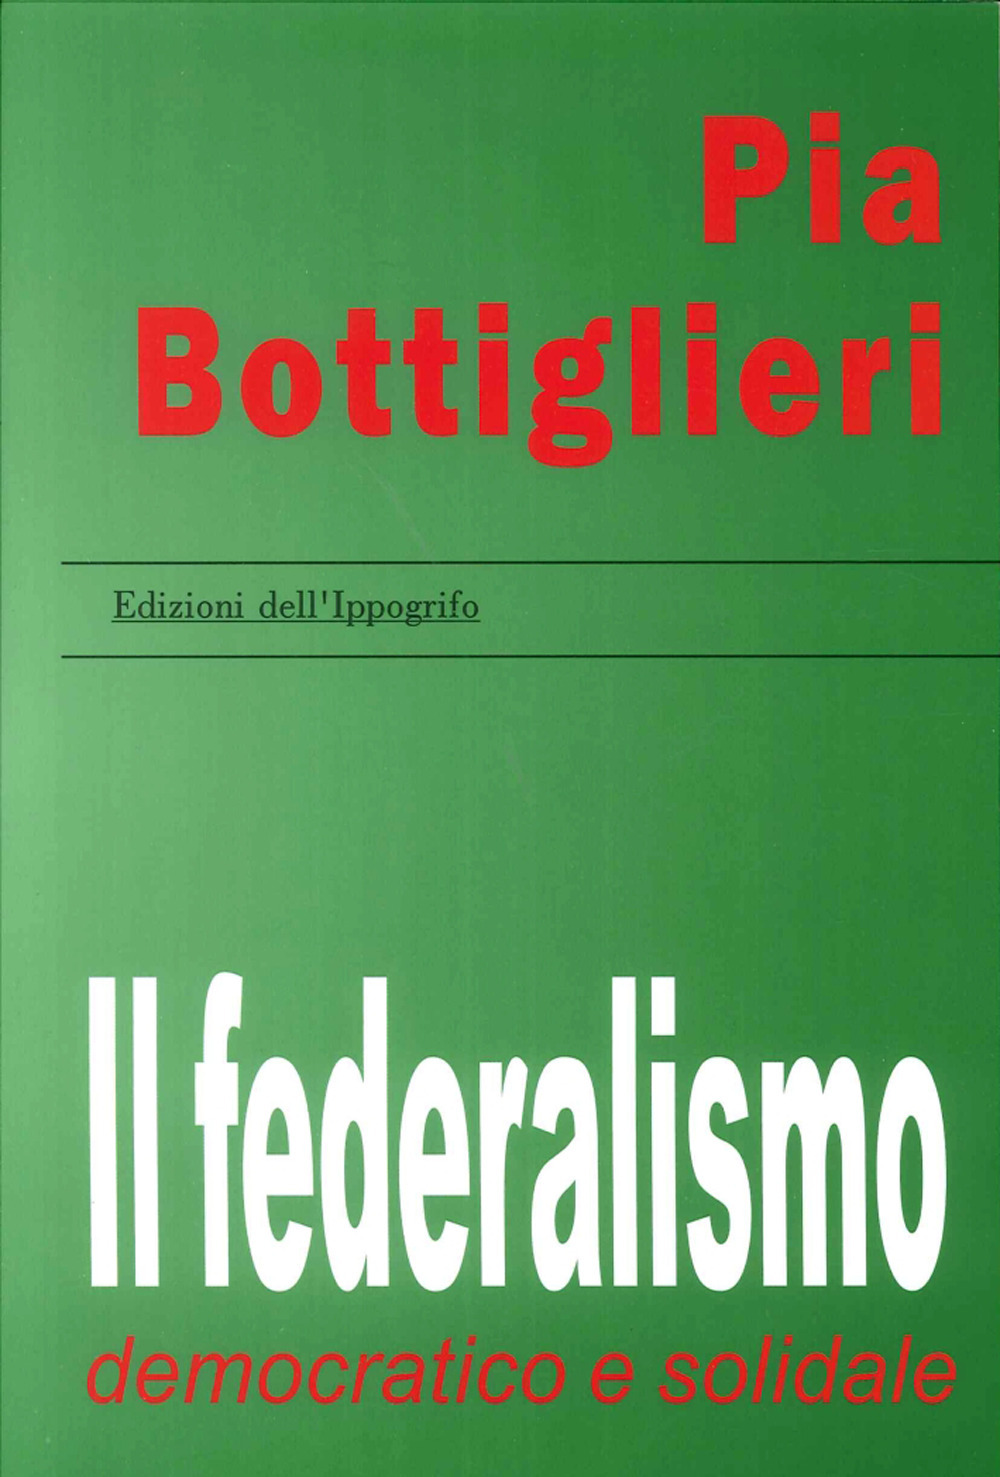 Il federalismo democratico e solidale